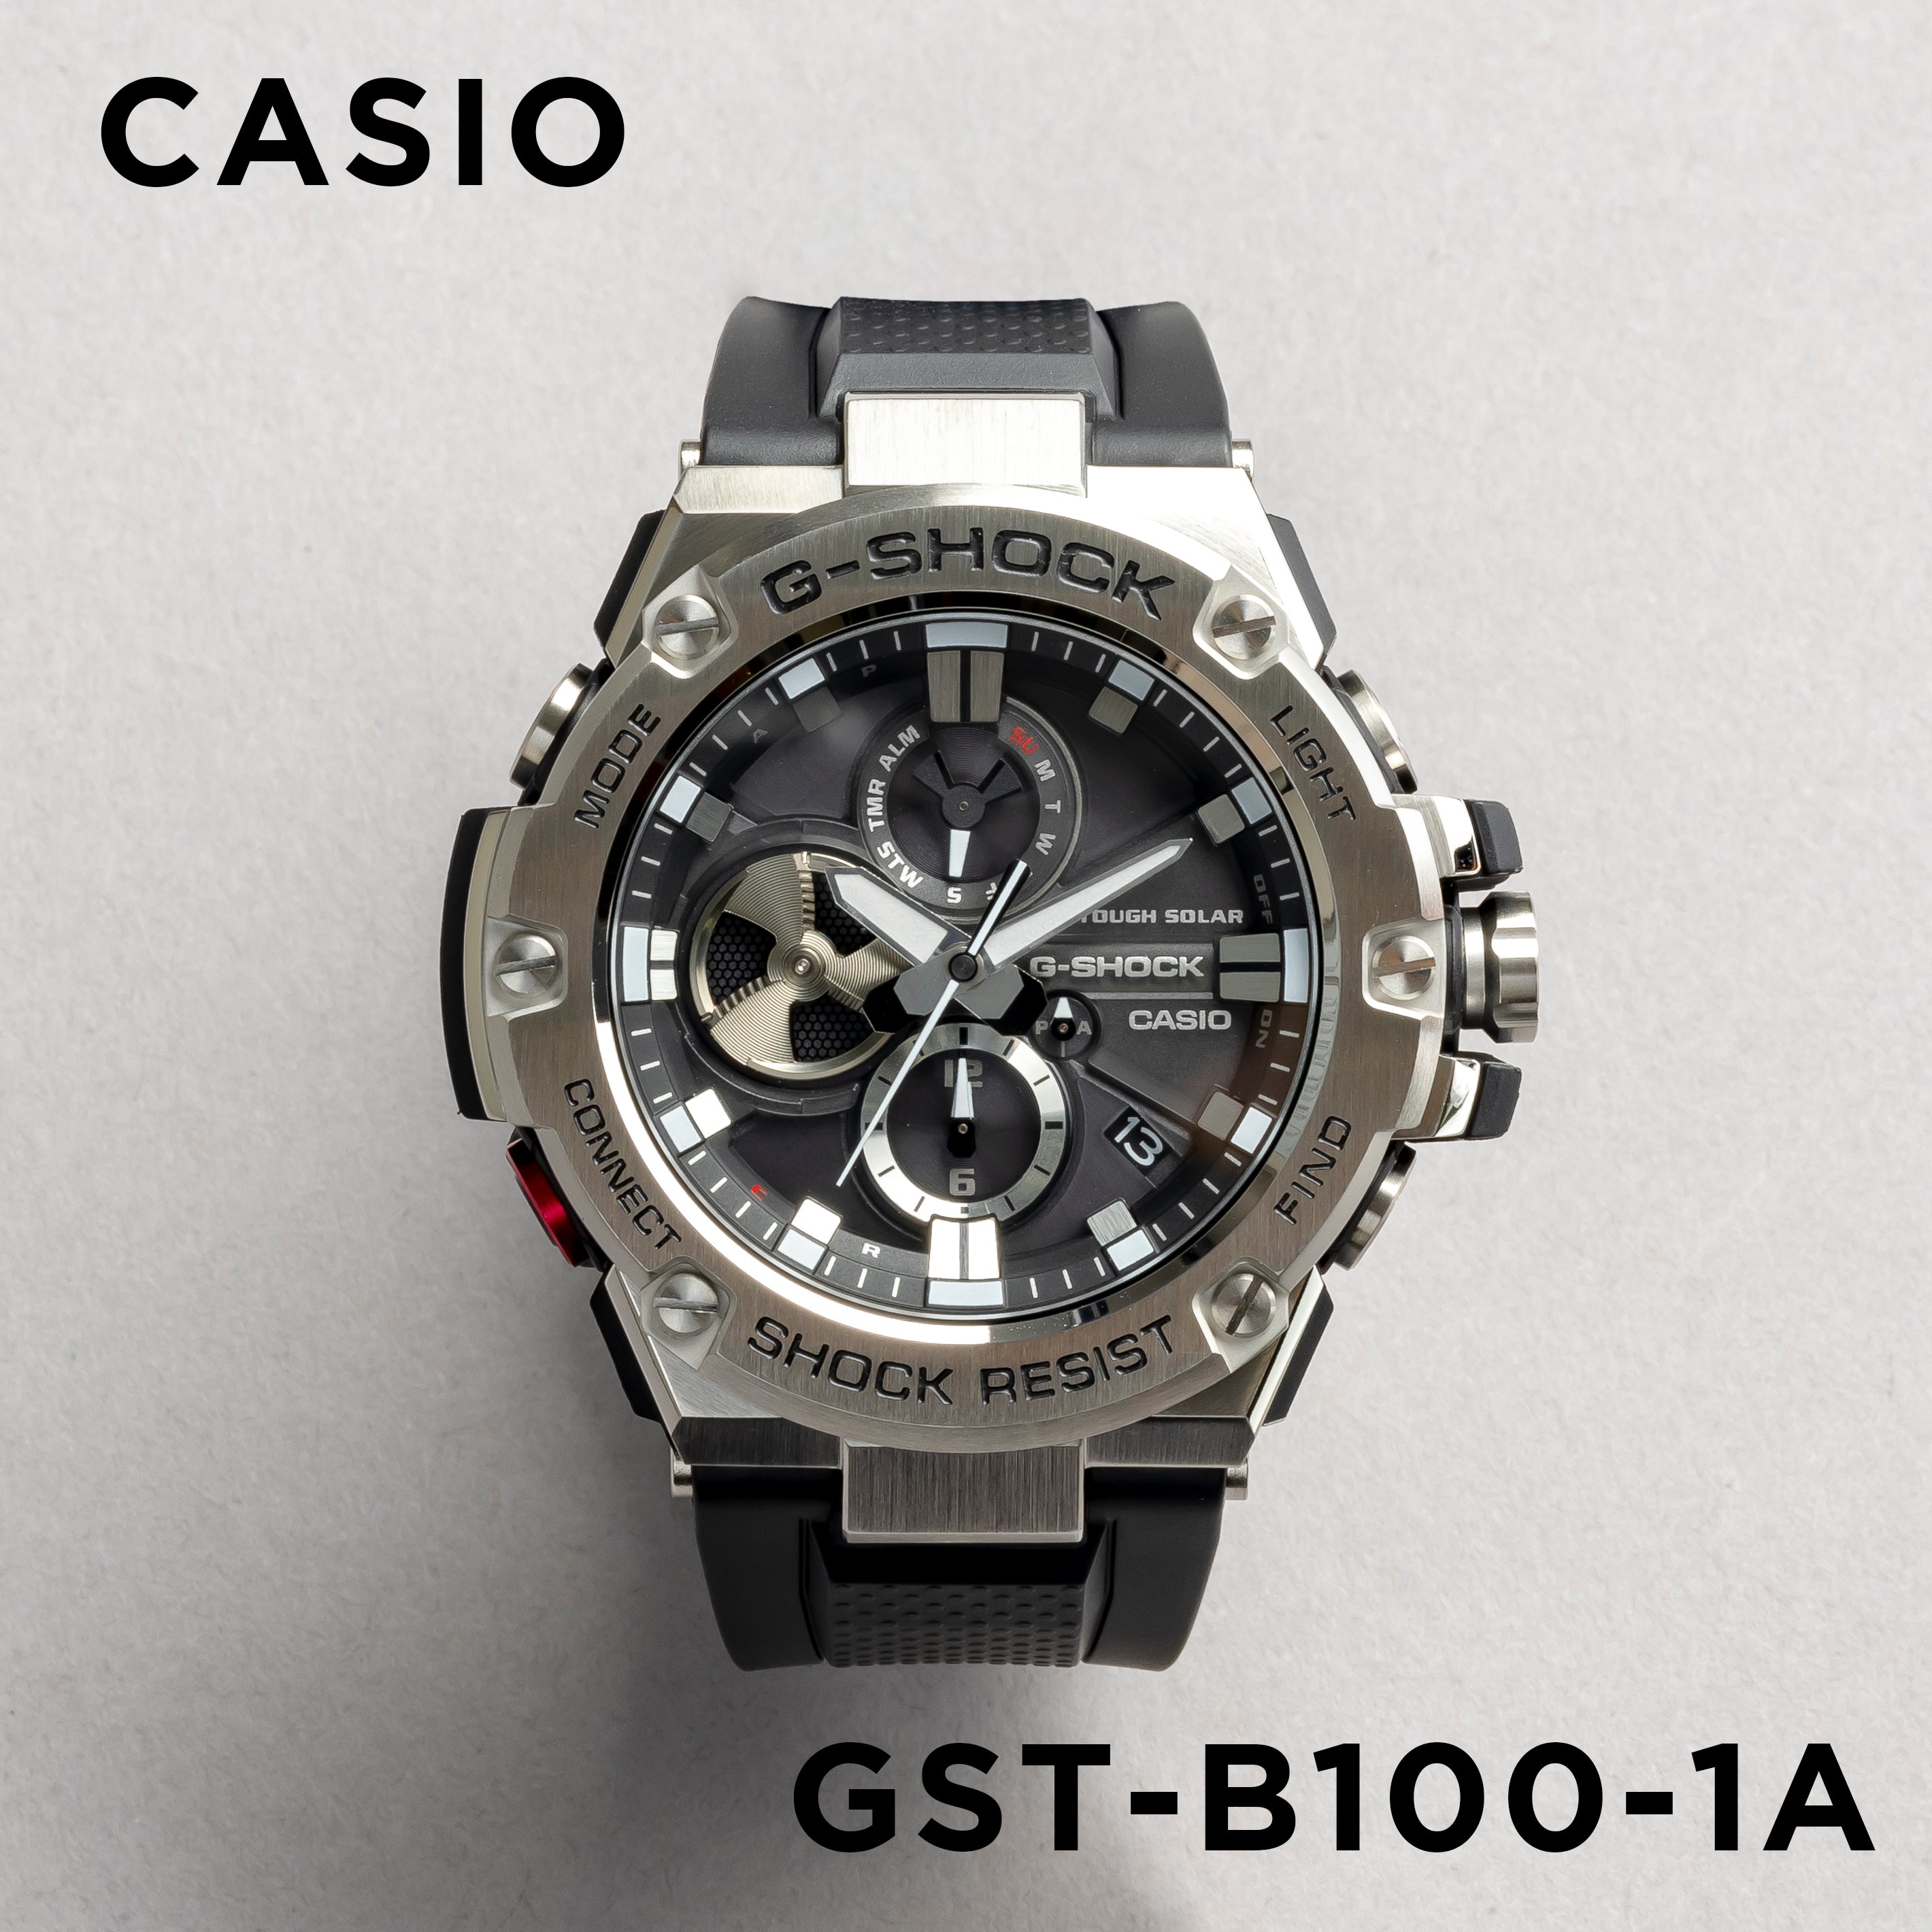 Casio G-shock G-steel GST-B100-1A.